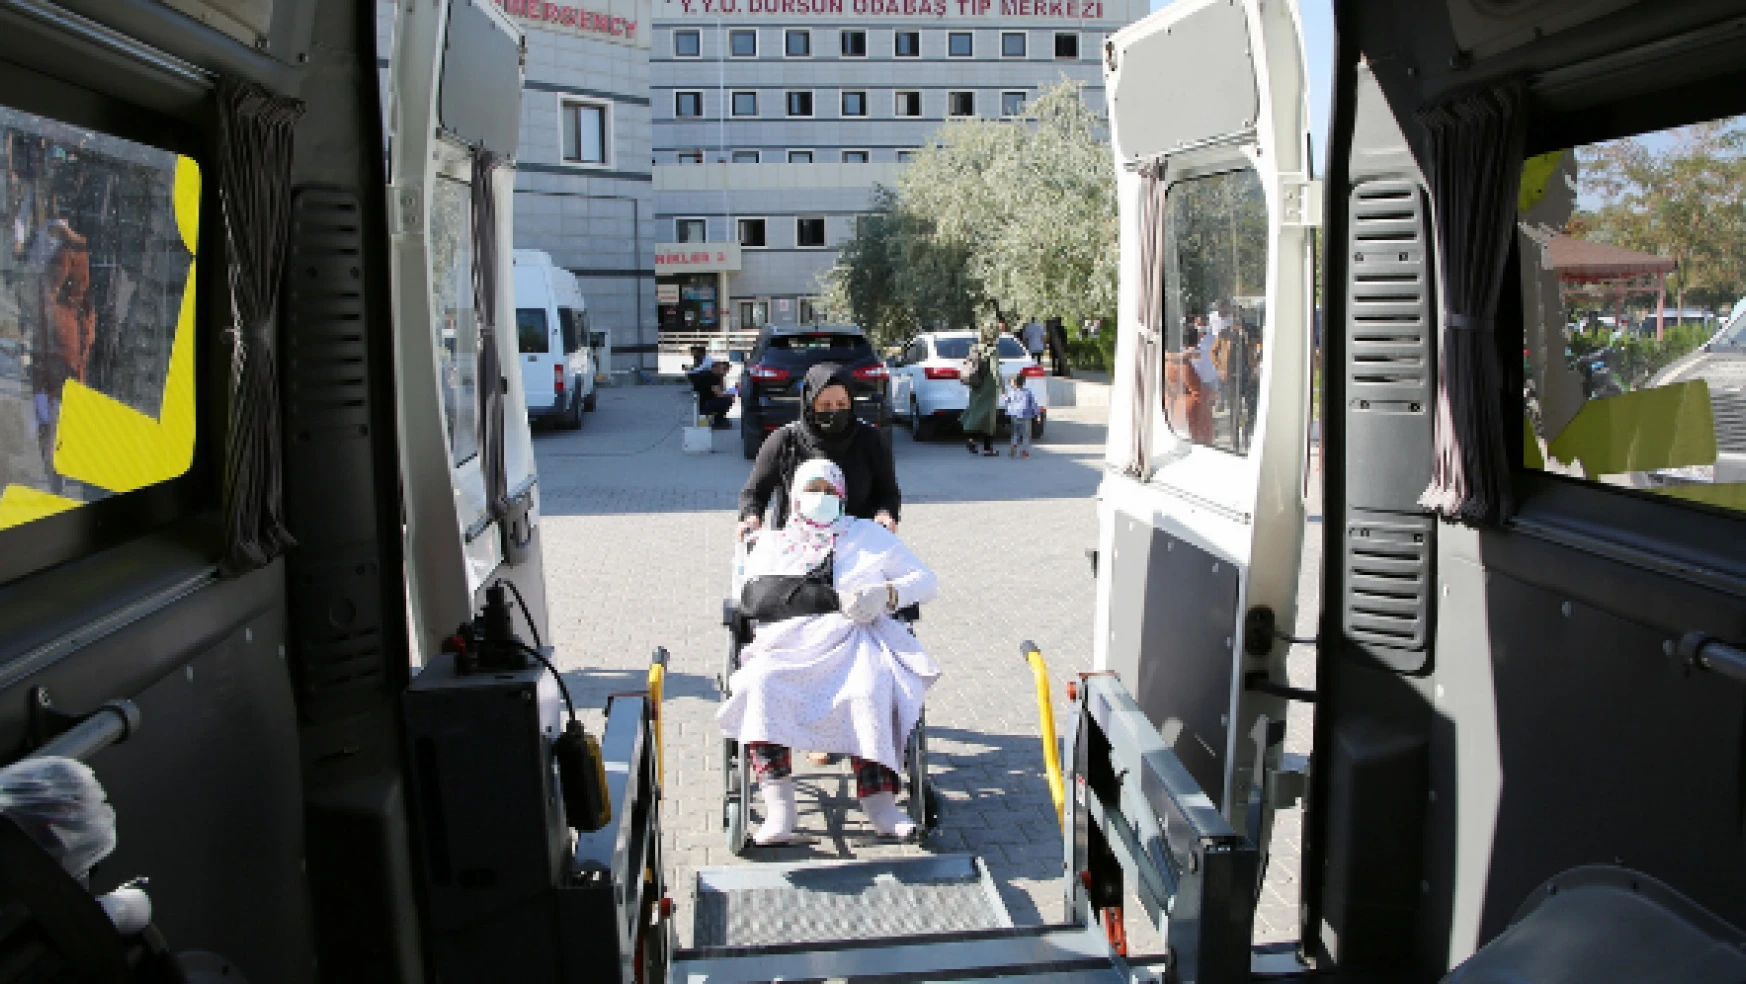 Engelli vatandaşlar için özel araç tahsis edildi